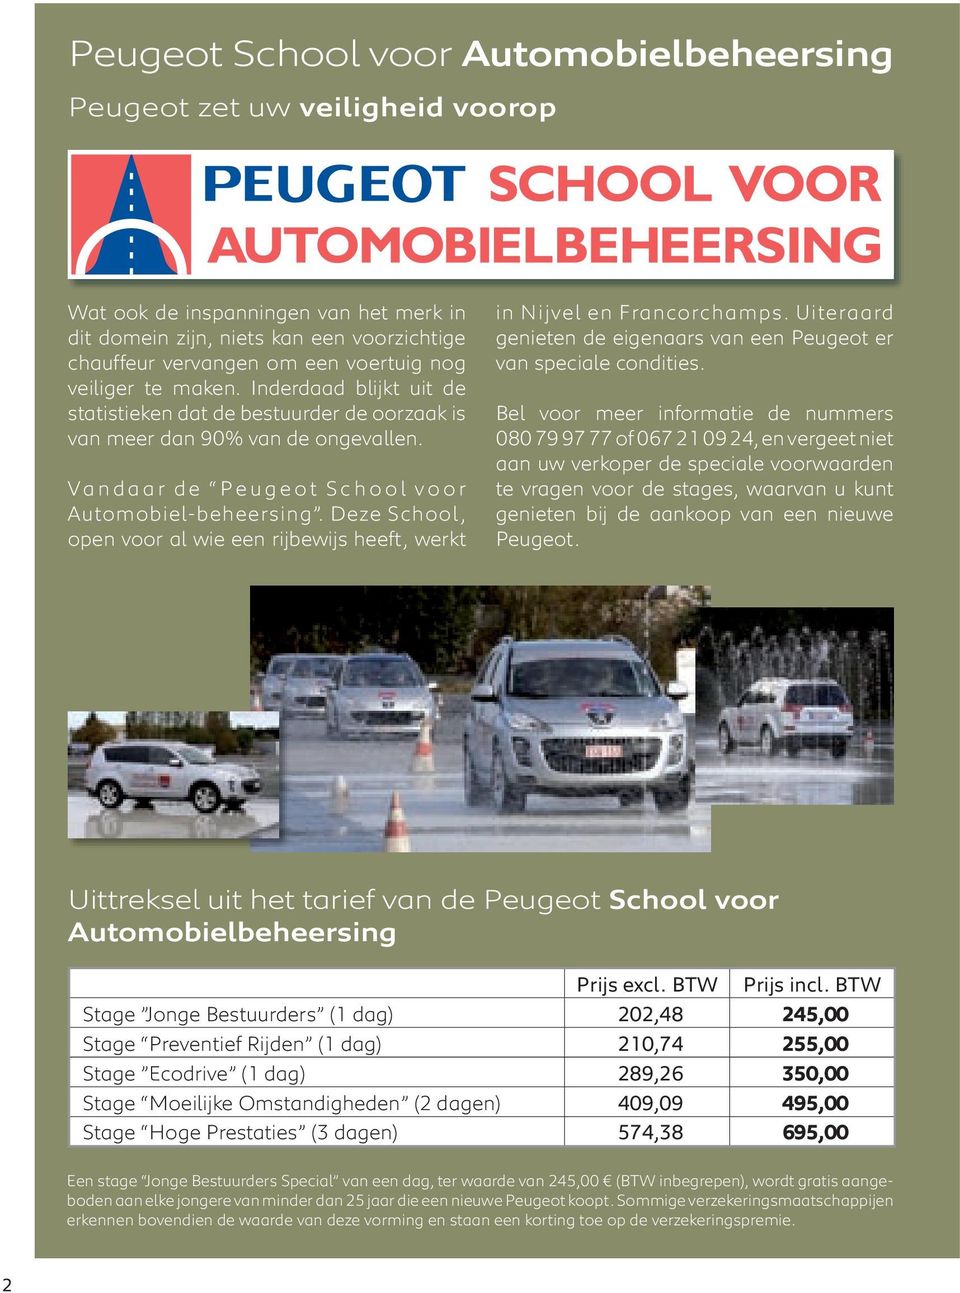 Deze School, open voor al wie een rijbewijs heeft, werkt in Nijvel en Francorchamps. Uiteraard genieten de eigenaars van een Peugeot er van speciale condities.